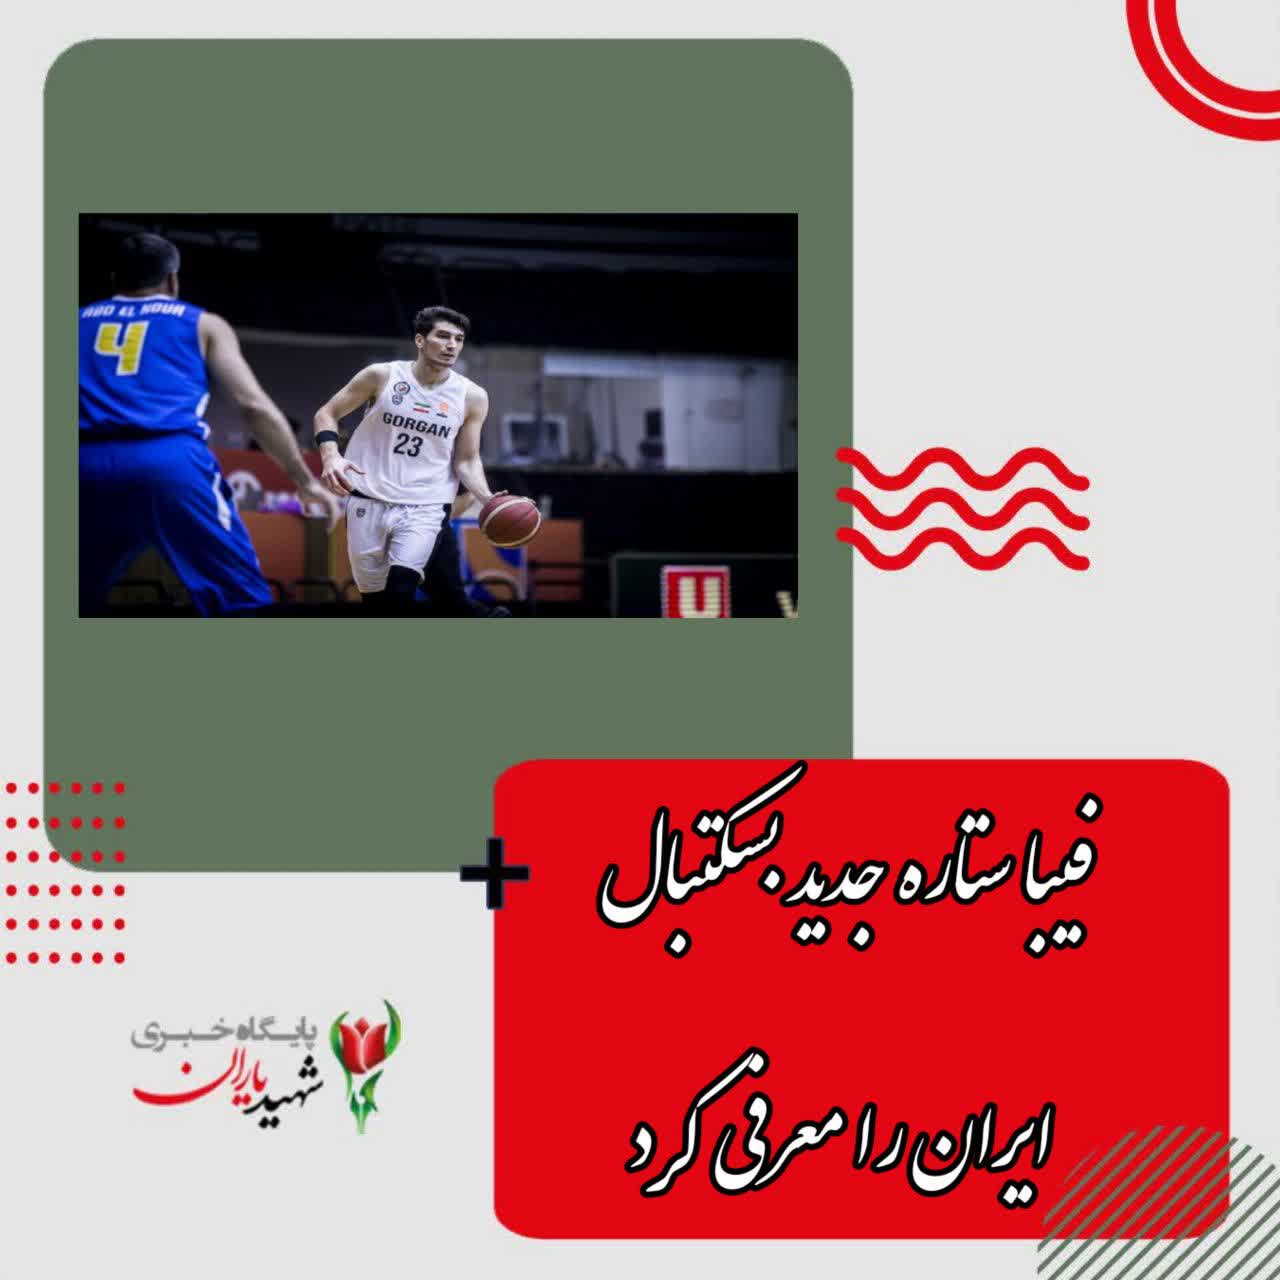 فیبا ستاره جدید بسکتبال ایران را معرفی کرد